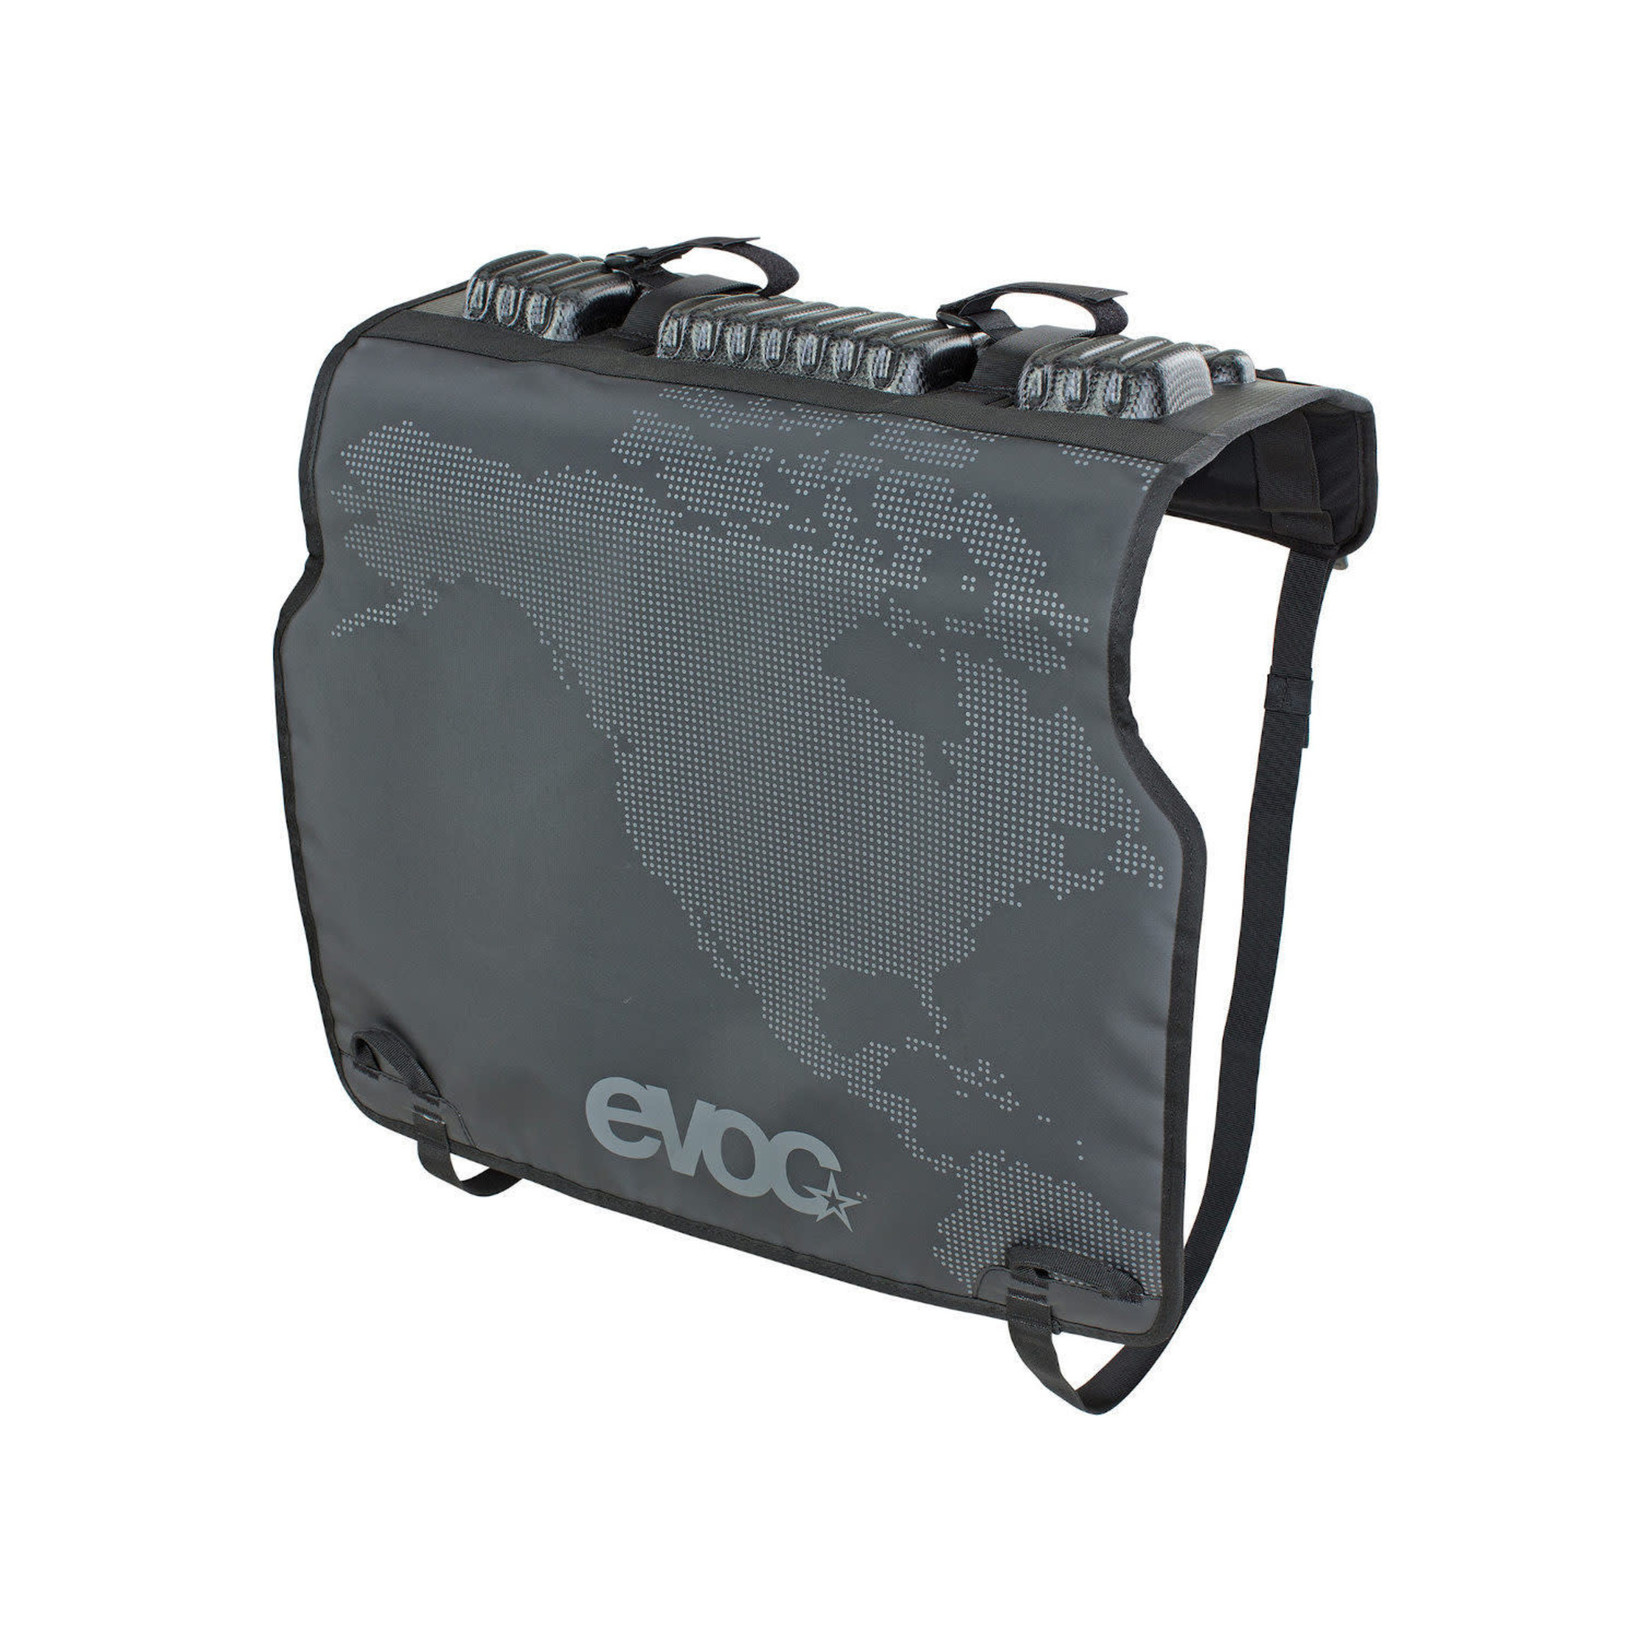 EVOC EVOC, Tailgate Pad Duo, Protecteur de panneau de boîte de camionnette, Convient à toutes les camionettes, Pour 2 vélos, Noir